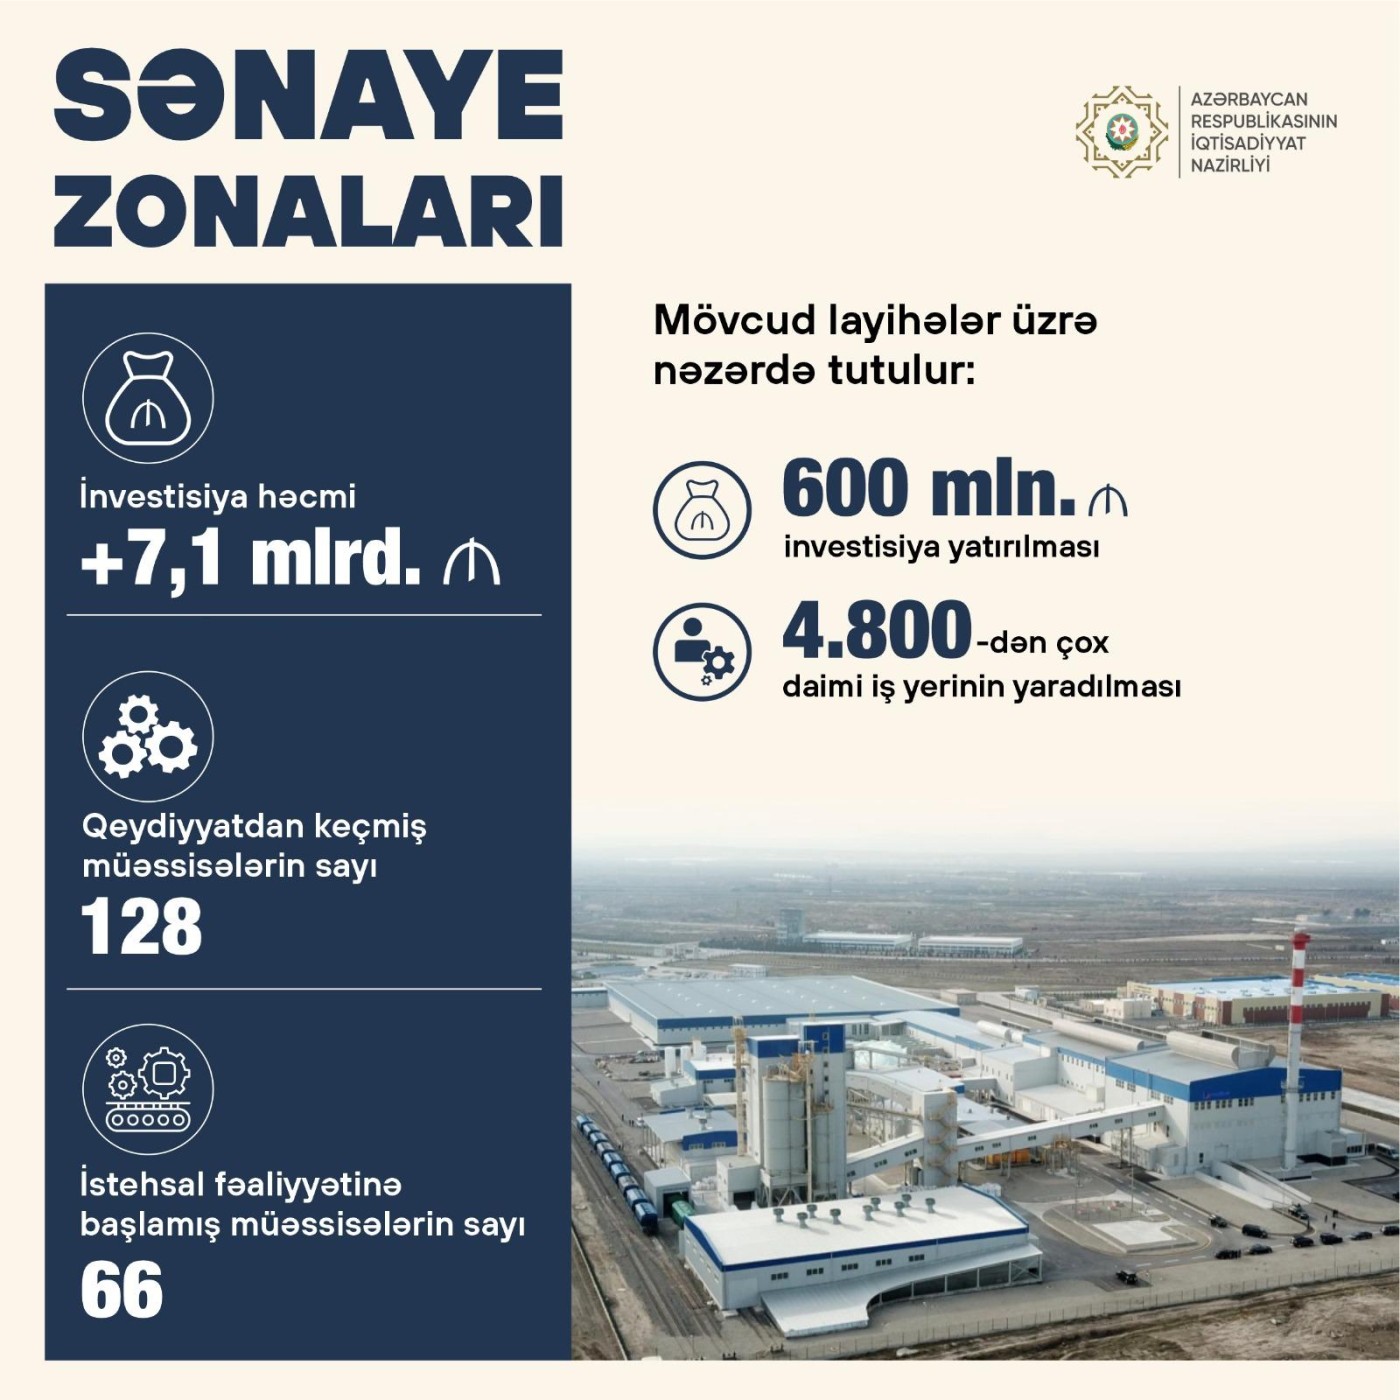 "Sənaye zonalarına 600 milyon manat investisiya yatırılacaq" - Nazir